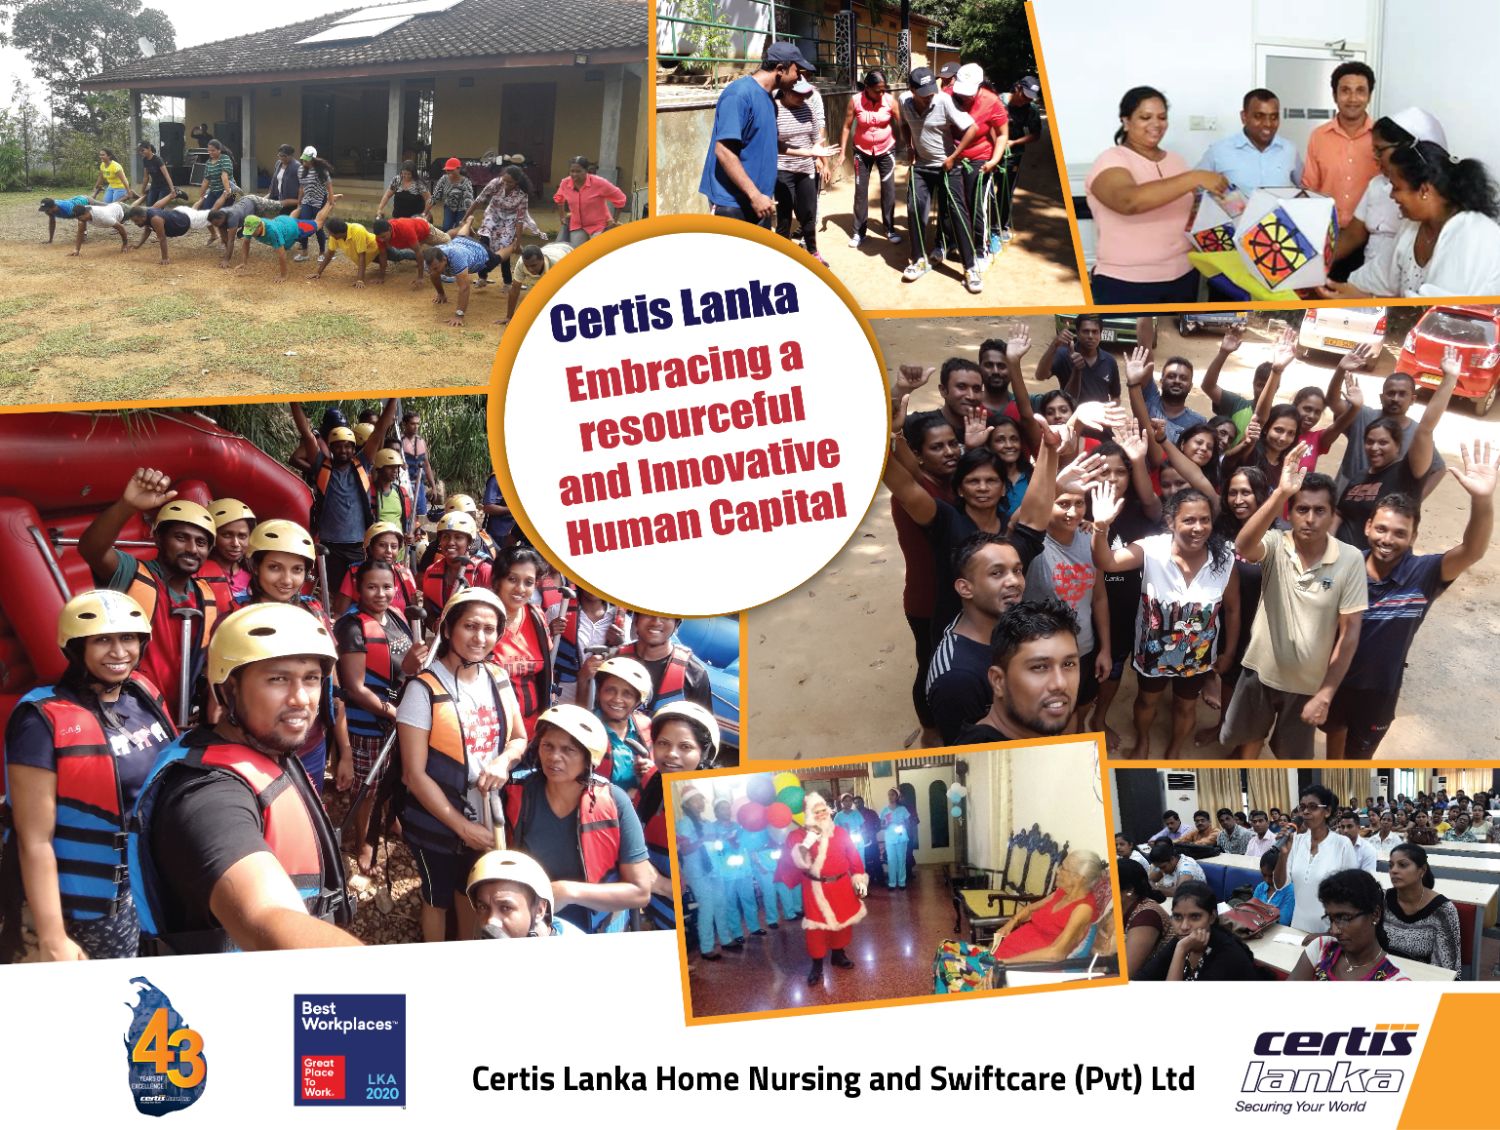 Certis Lanka Home Nursing & Swiftcare (Pvt) Ltd